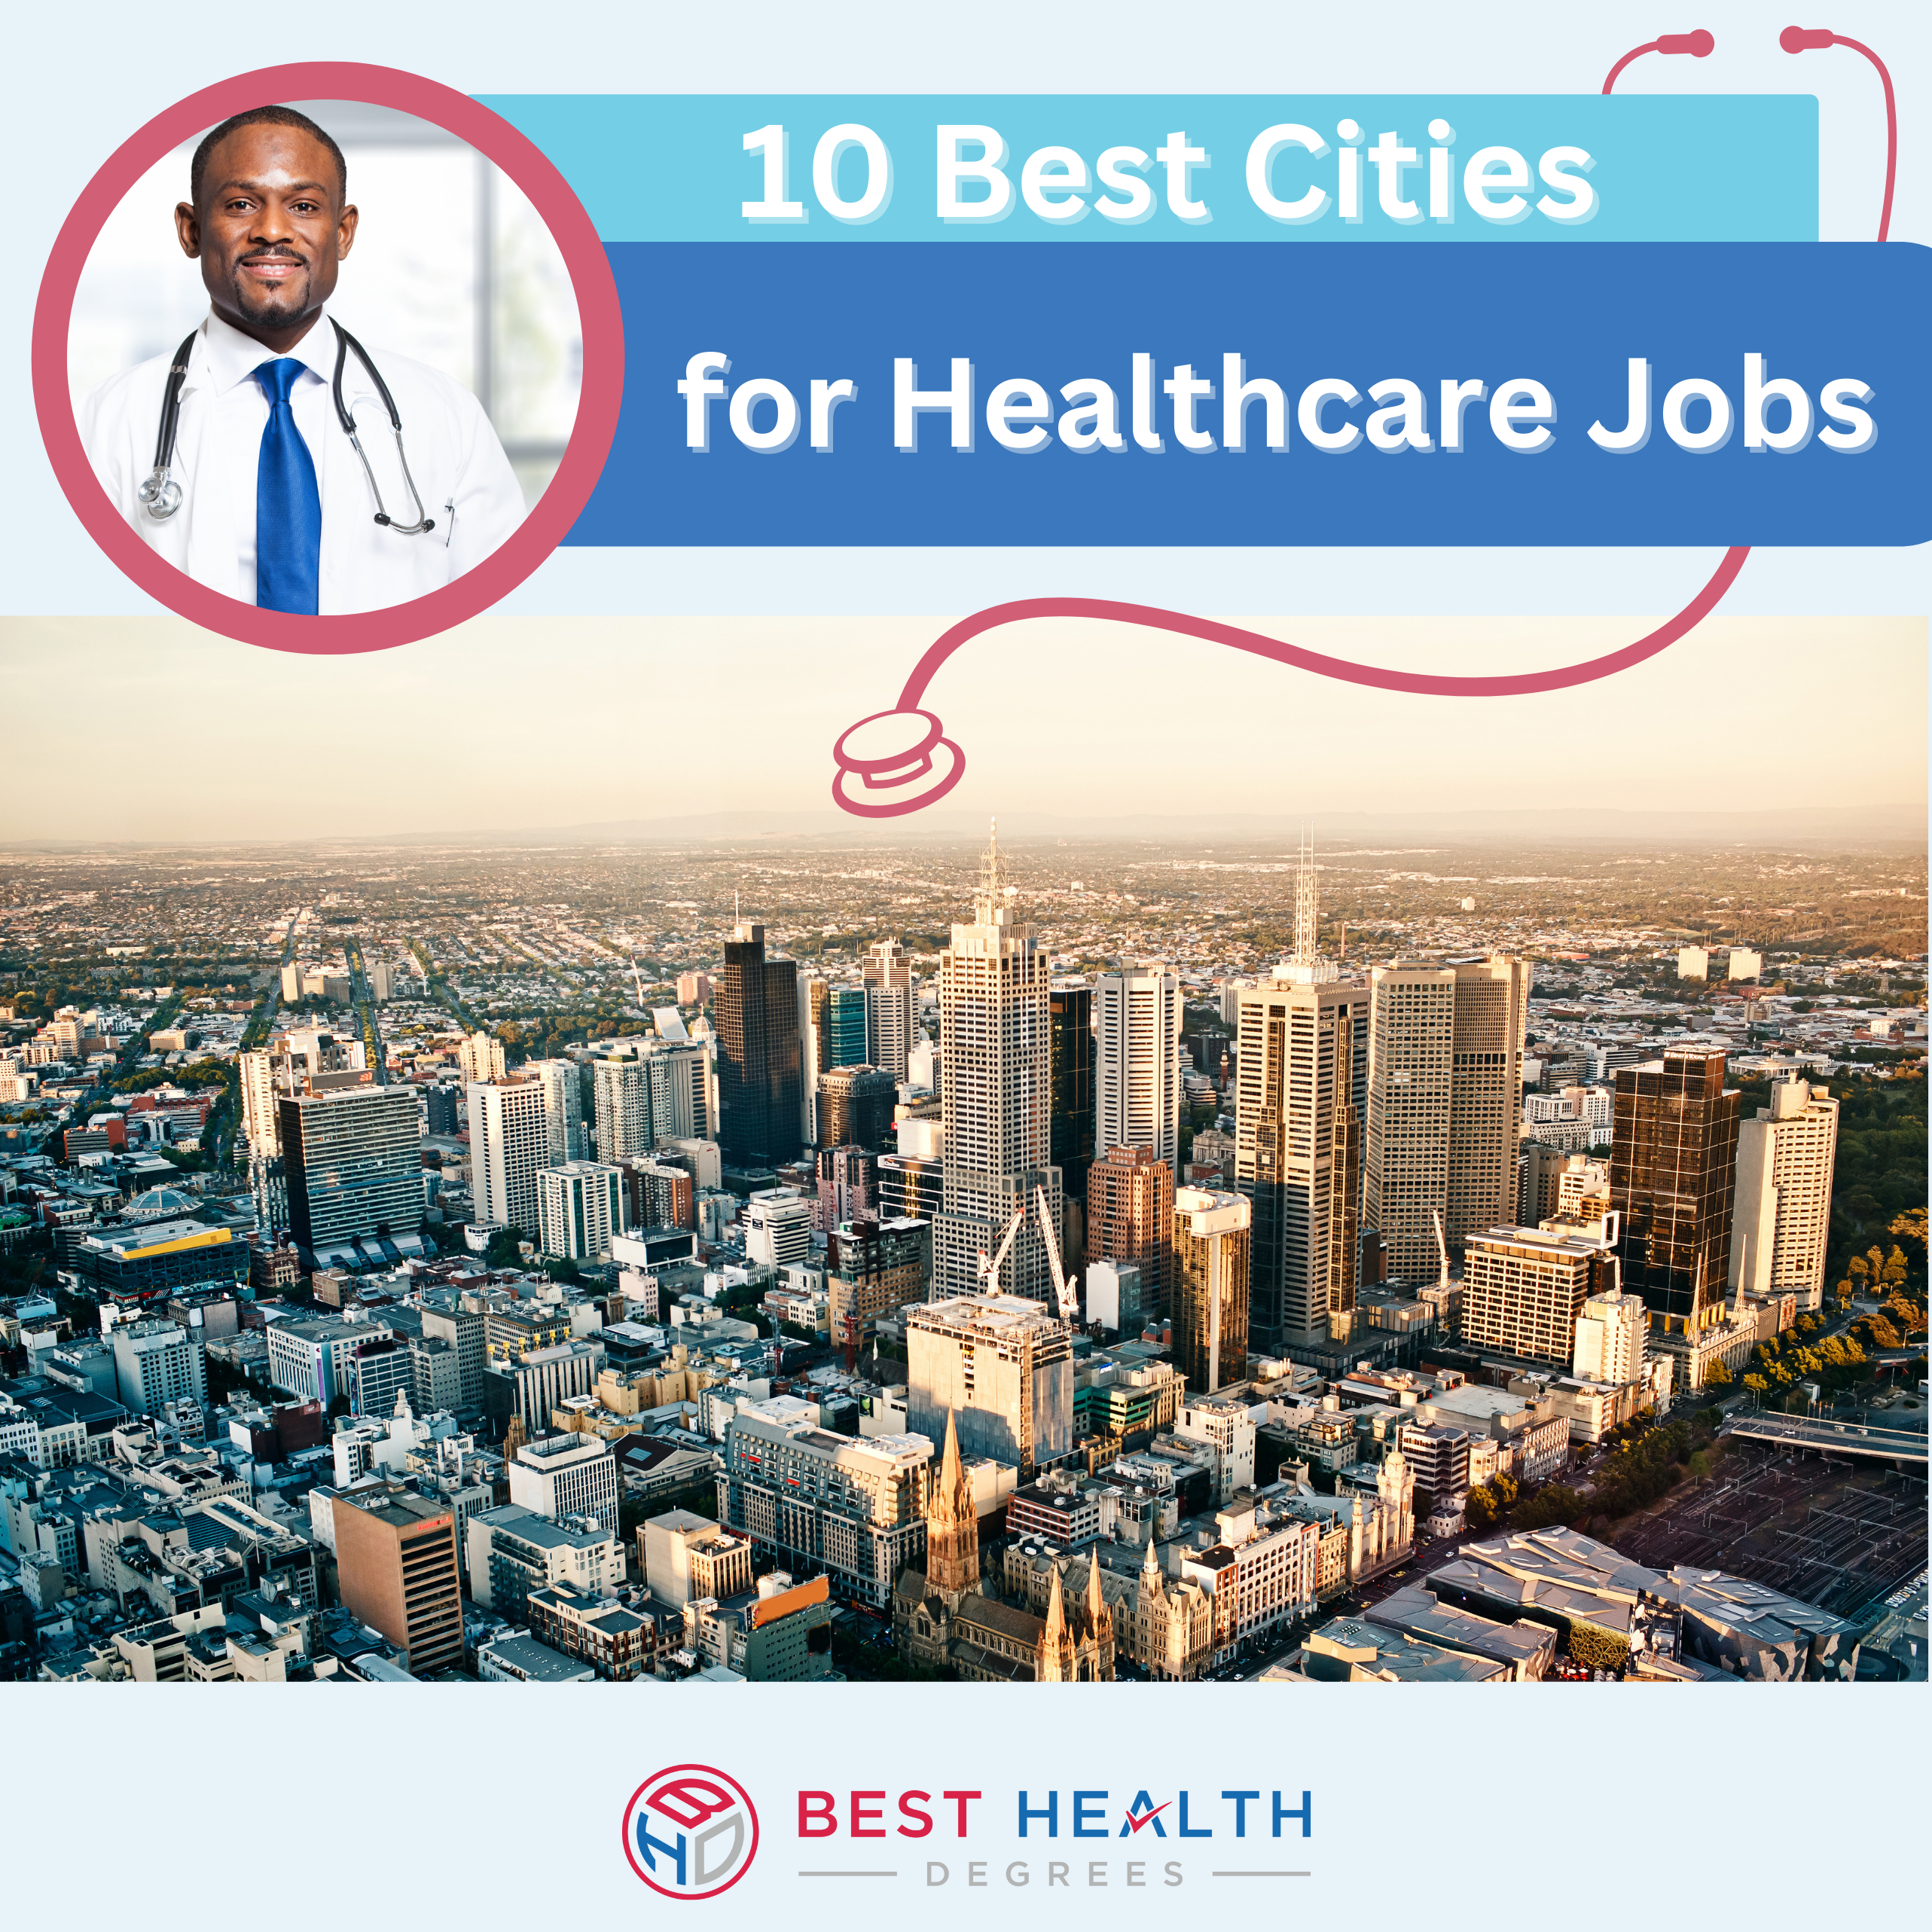 Best Cities for Healthcare Jobs